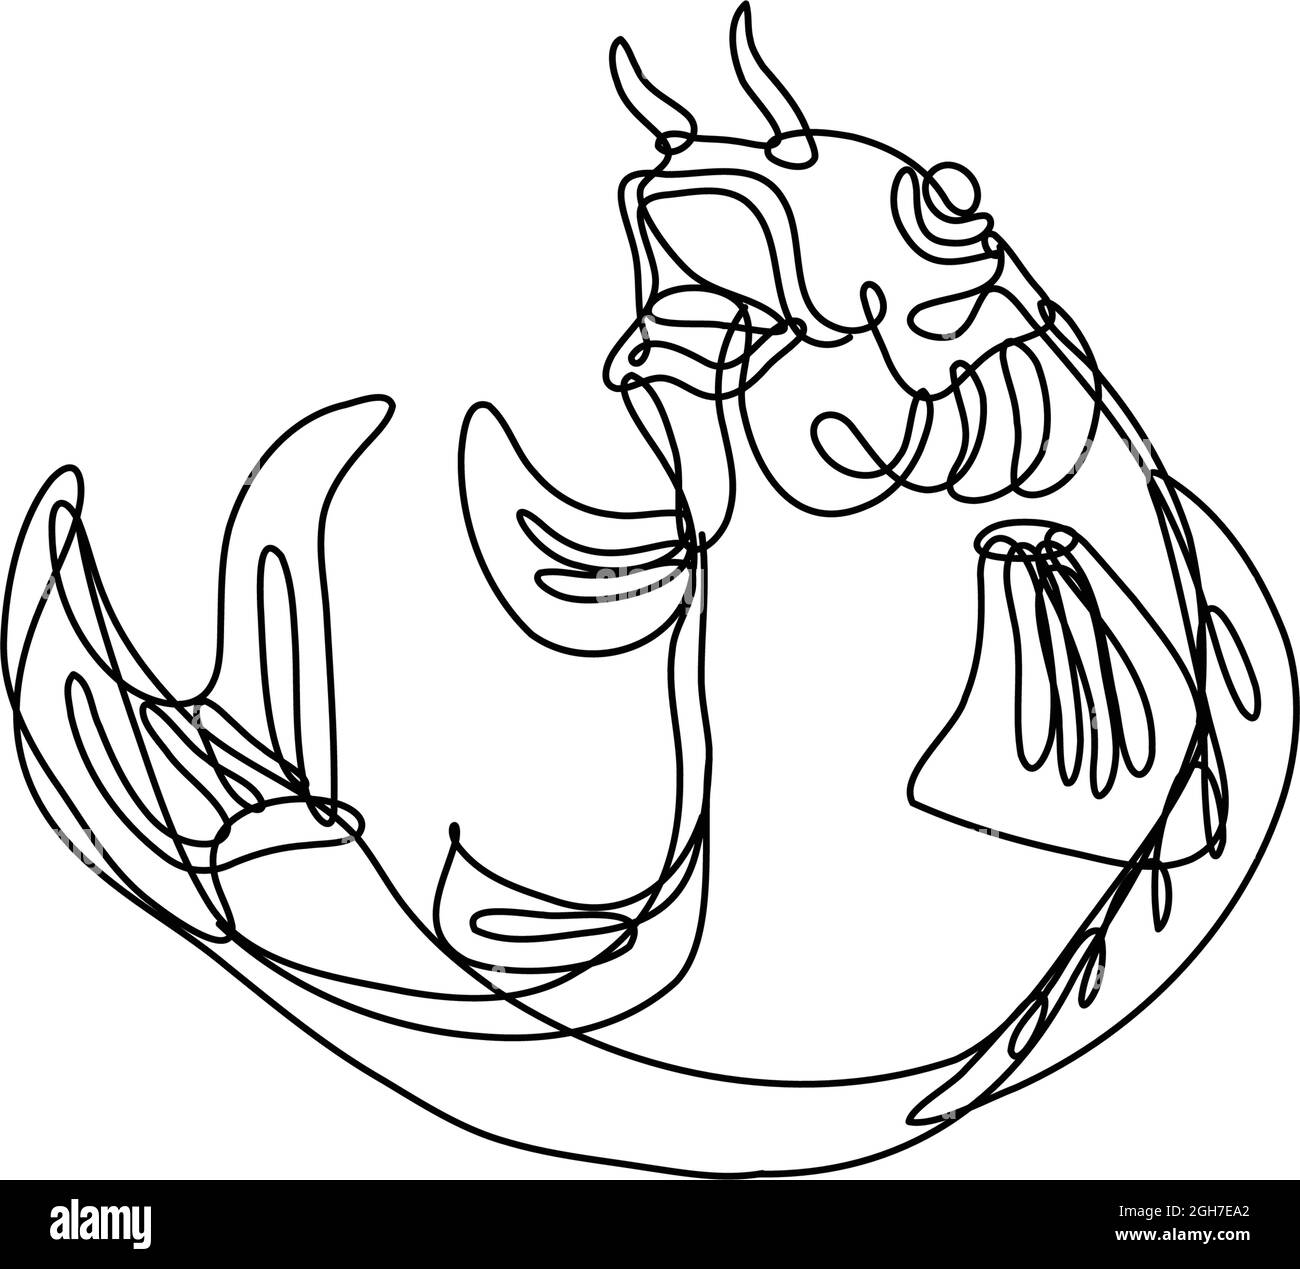 Dessin de ligne continue illustration d'un poisson de carpe nishikigoi koi sautant fait en ligne mono ou en style doodle en noir et blanc sur le backgro isolé Illustration de Vecteur